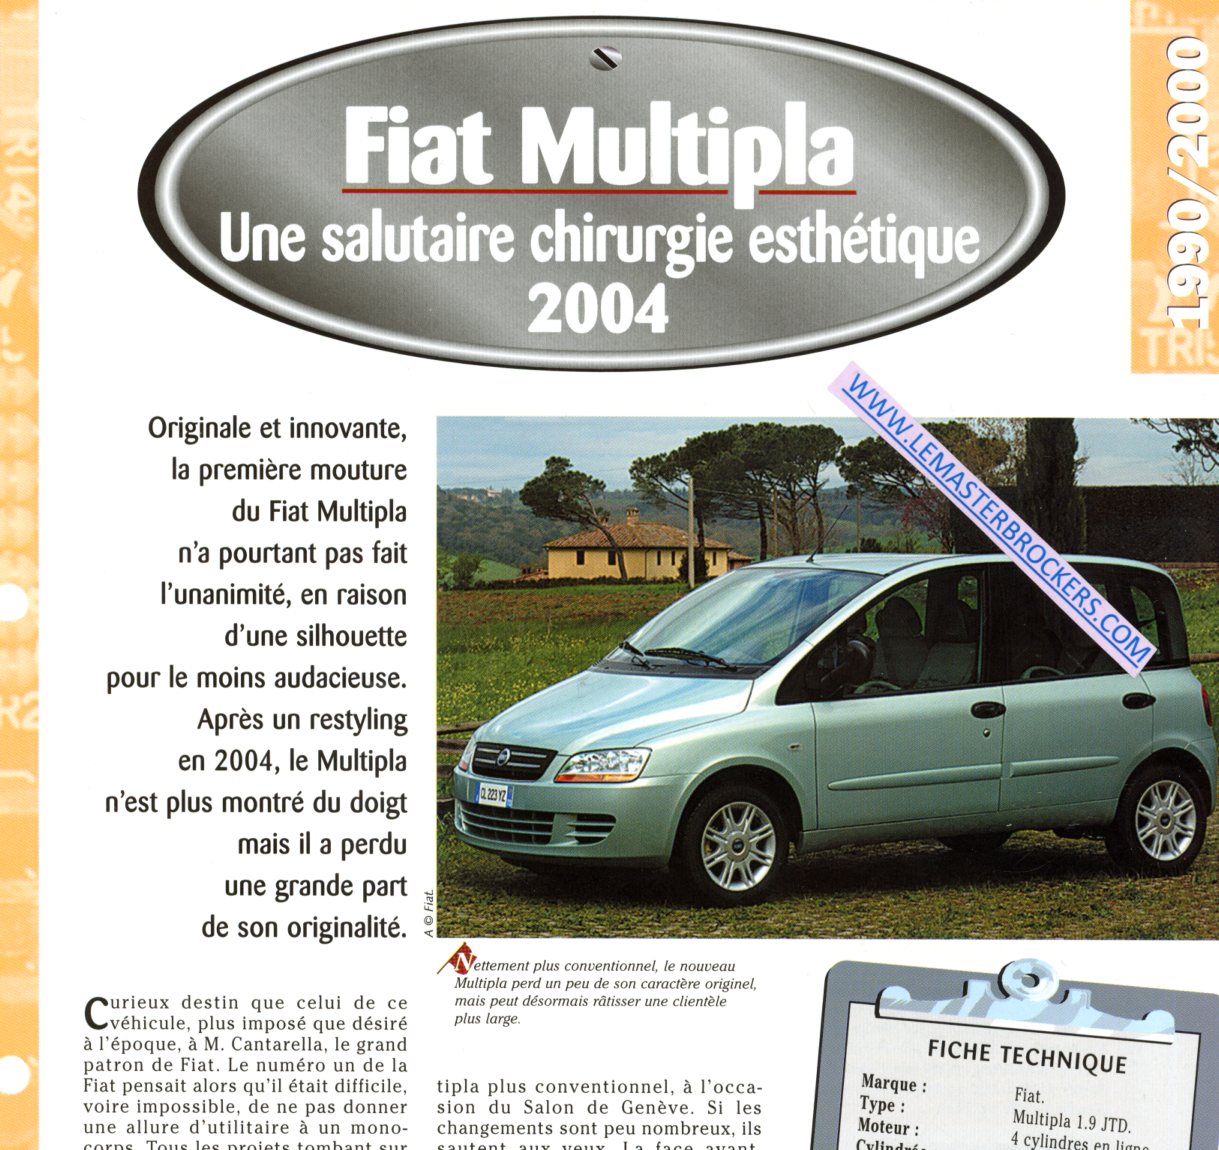 FICHE TECHNIQUE FIAT MULTIPLA 2004